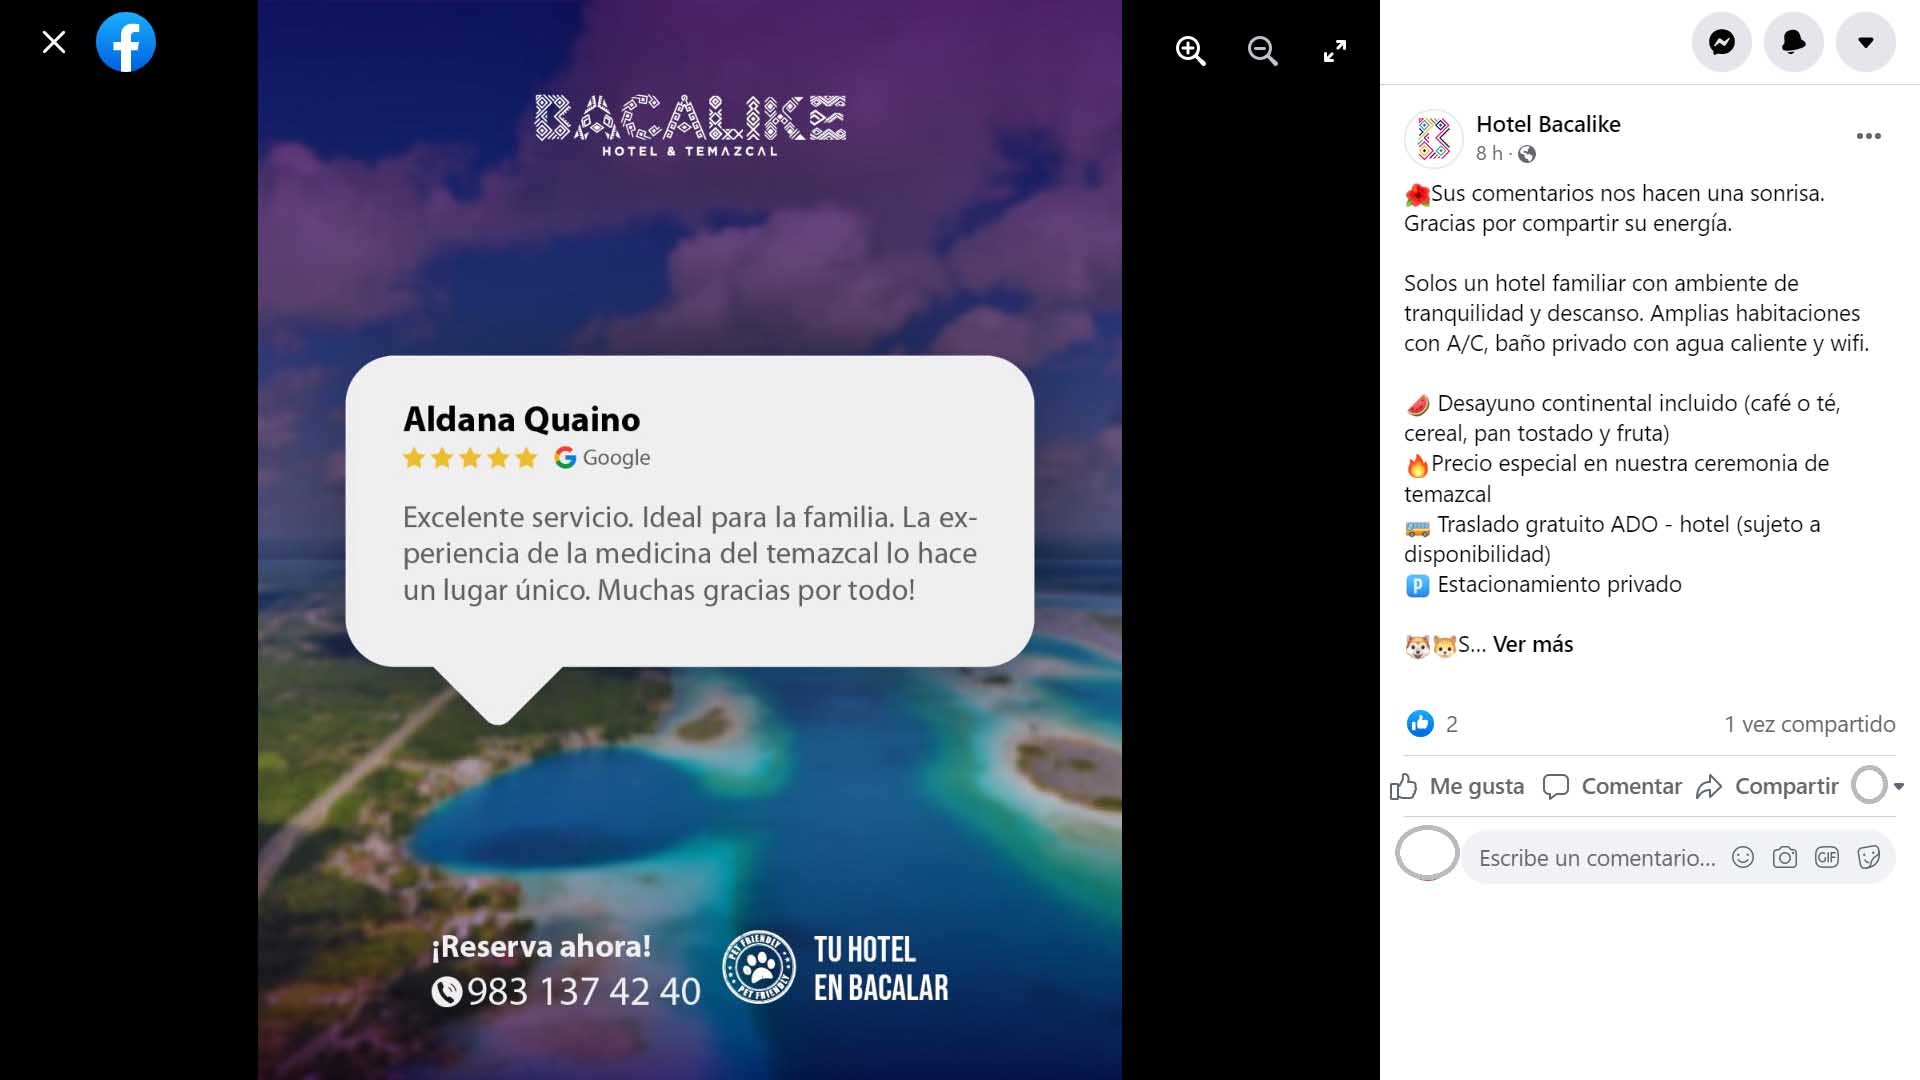 Ejemplos de publicidad hoteles: Bacalike